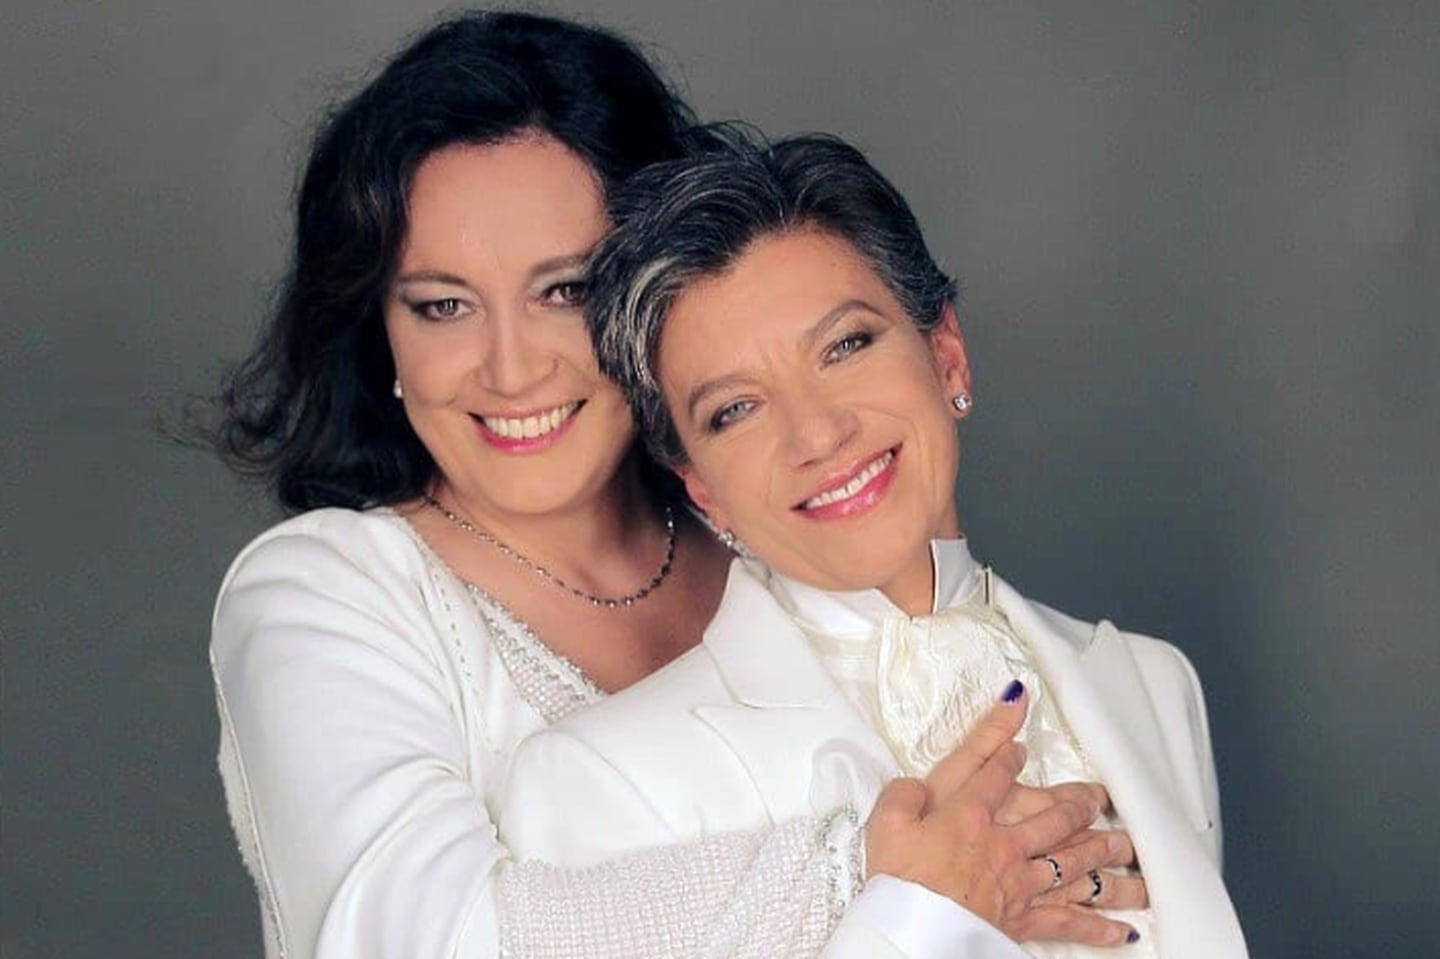 La alcaldesa electa de Bogotá, la centroizquierdista Claudia López (der.), se casó este lunes con su novia, la senadora opositora Angélica Lozano (izq.).